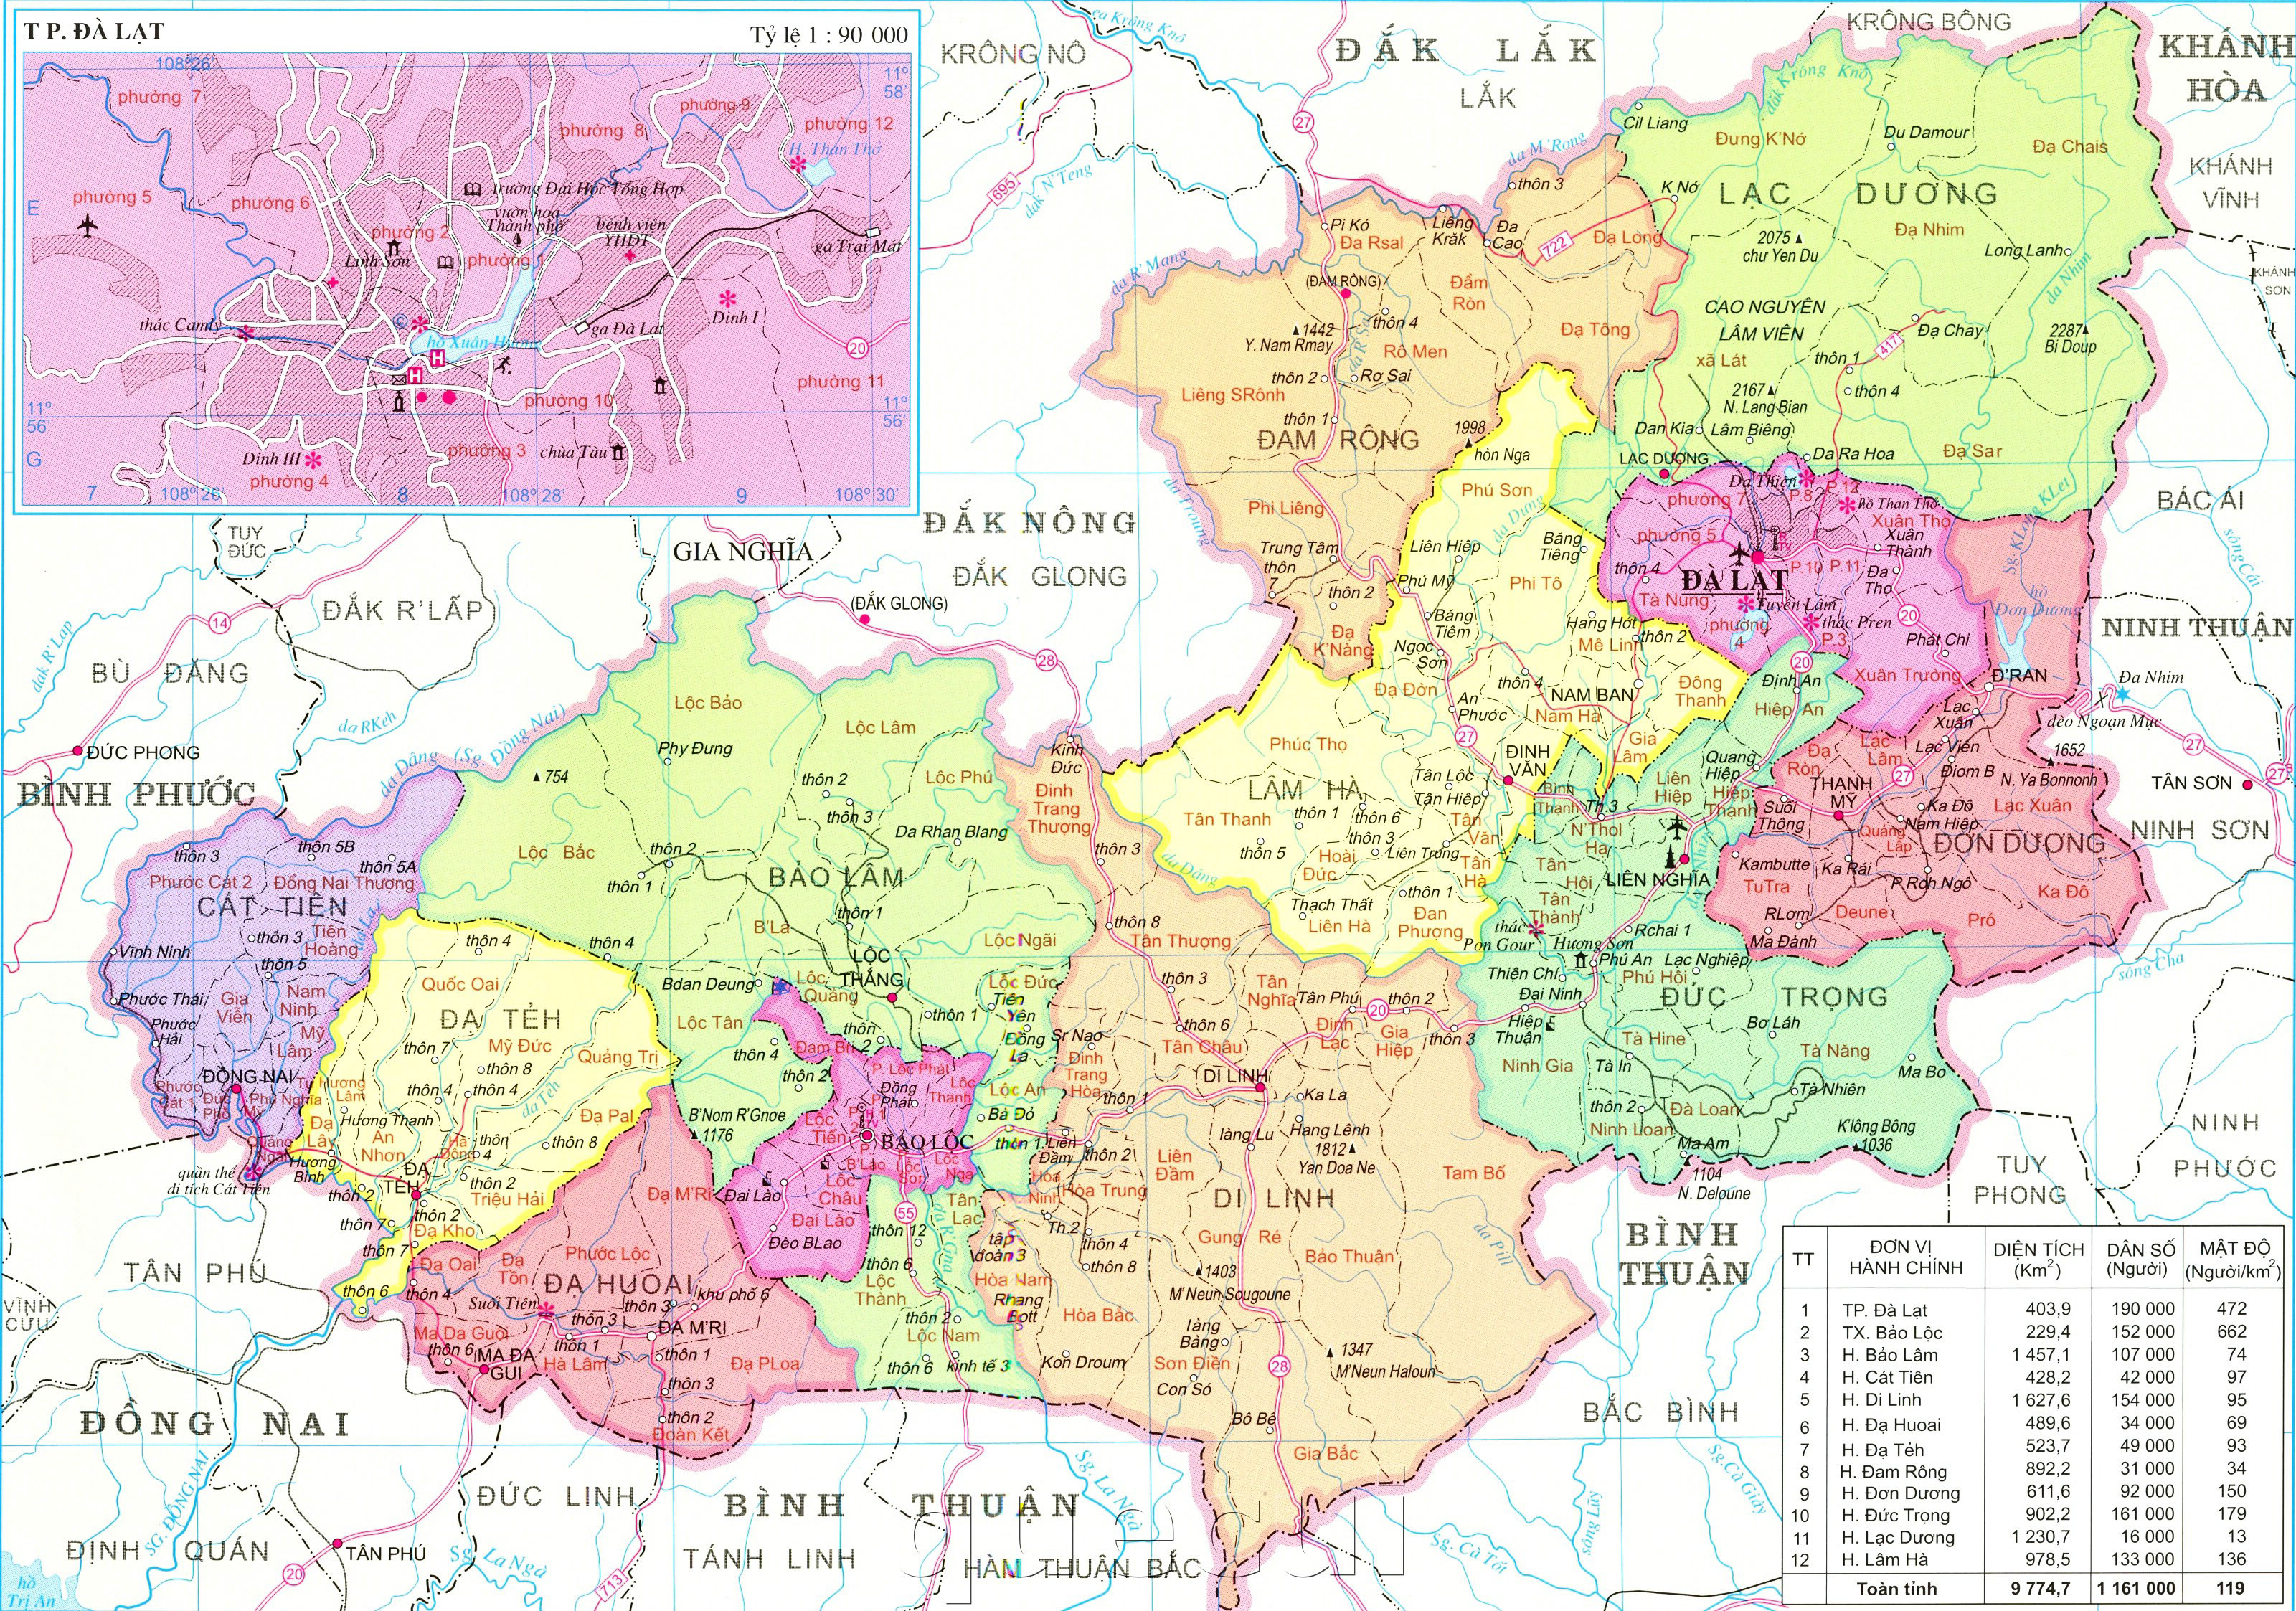 Bản đồ hành chính Lâm Đồng năm 2024 sẽ giúp cho những người quan tâm đến khu vực này có thể tiếp cận được thông tin về các thành phố, huyện và xã trong tỉnh Lâm Đồng.